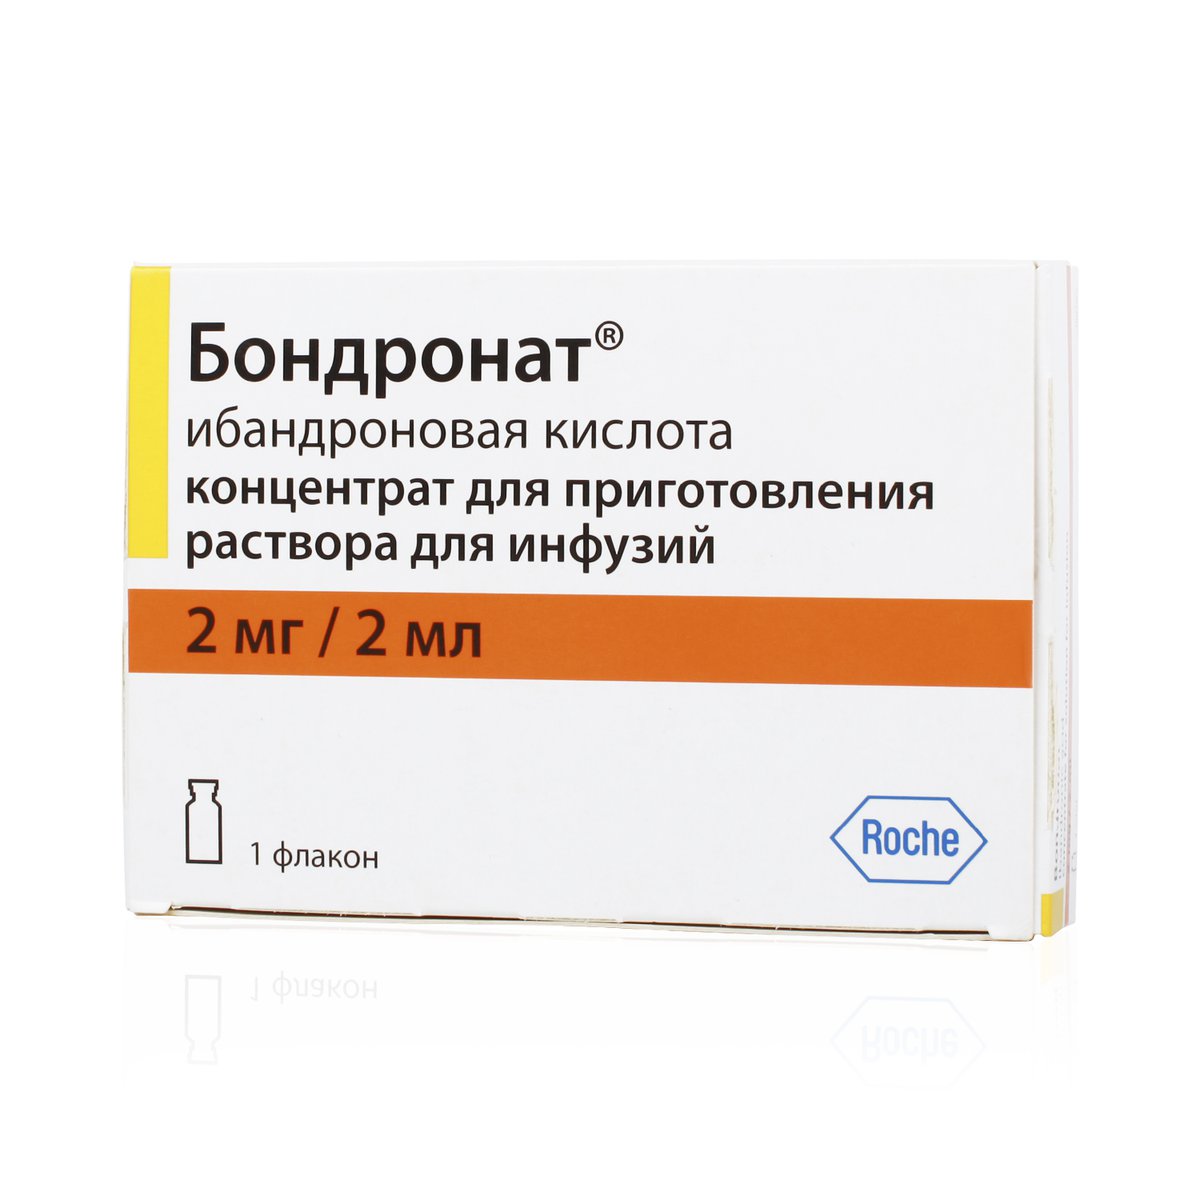 Бондронат (концентрат, 1 шт, 2 мг/мл, для раствора для инфузий) - цена .